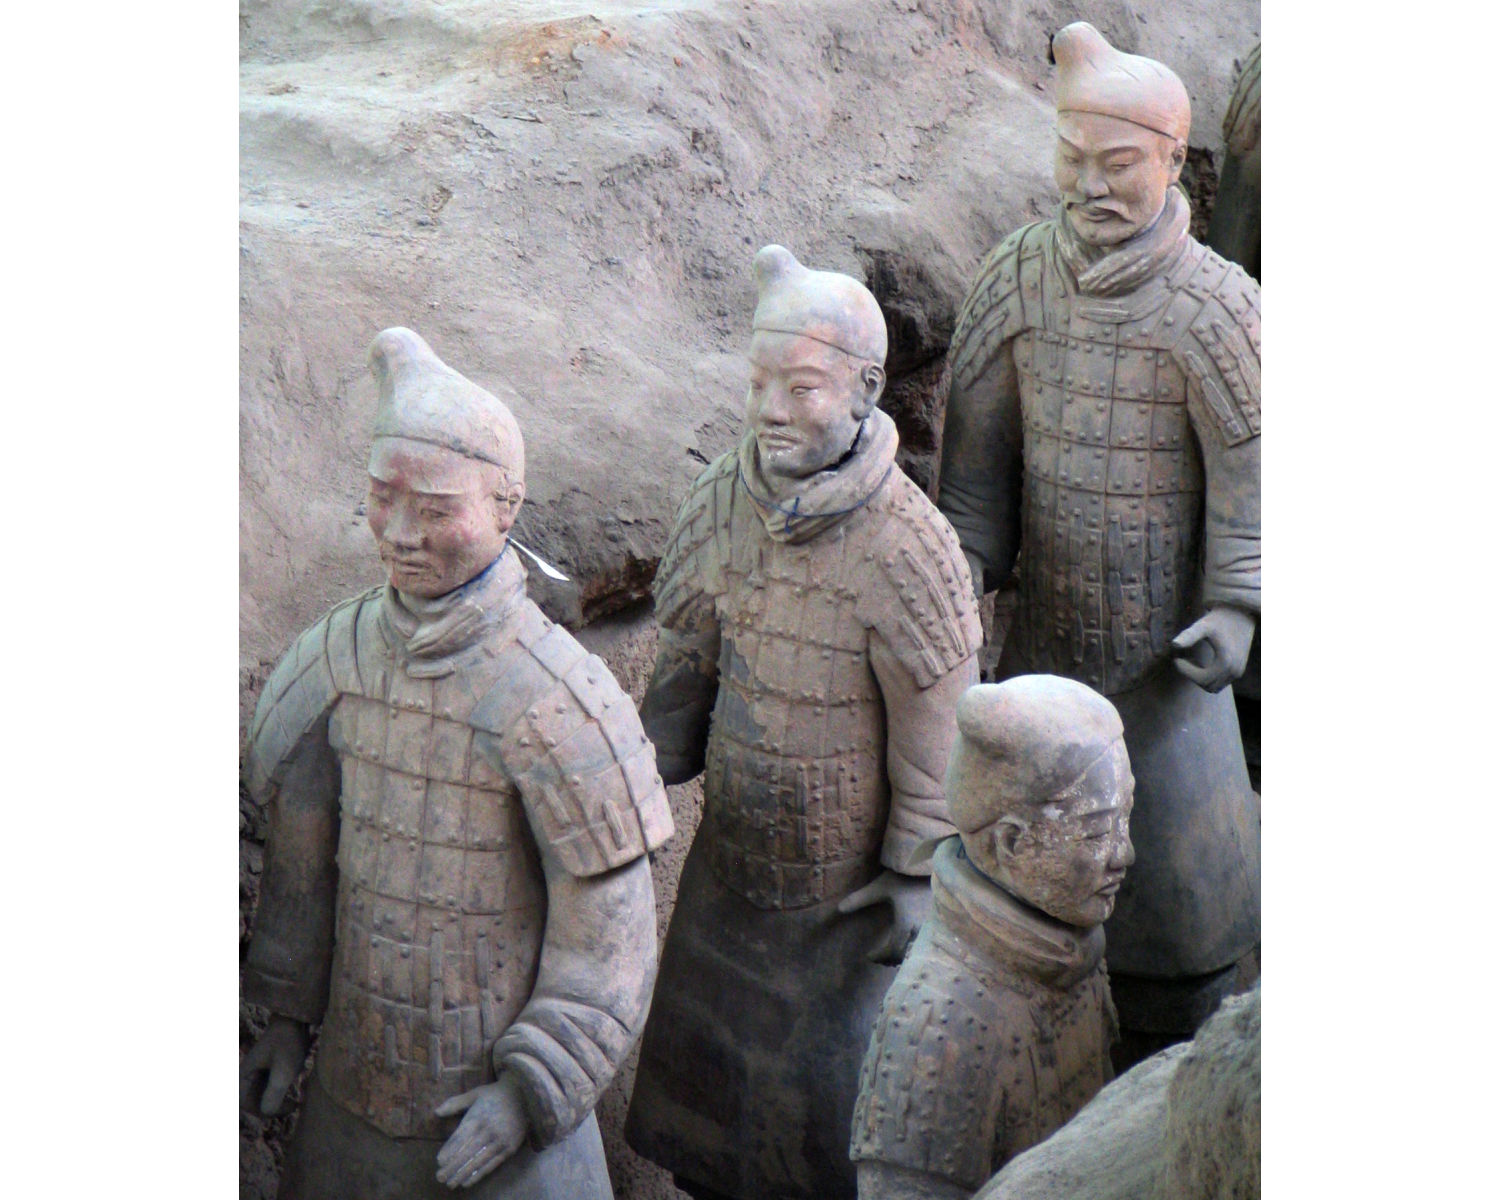 Terracotta army Xi'an